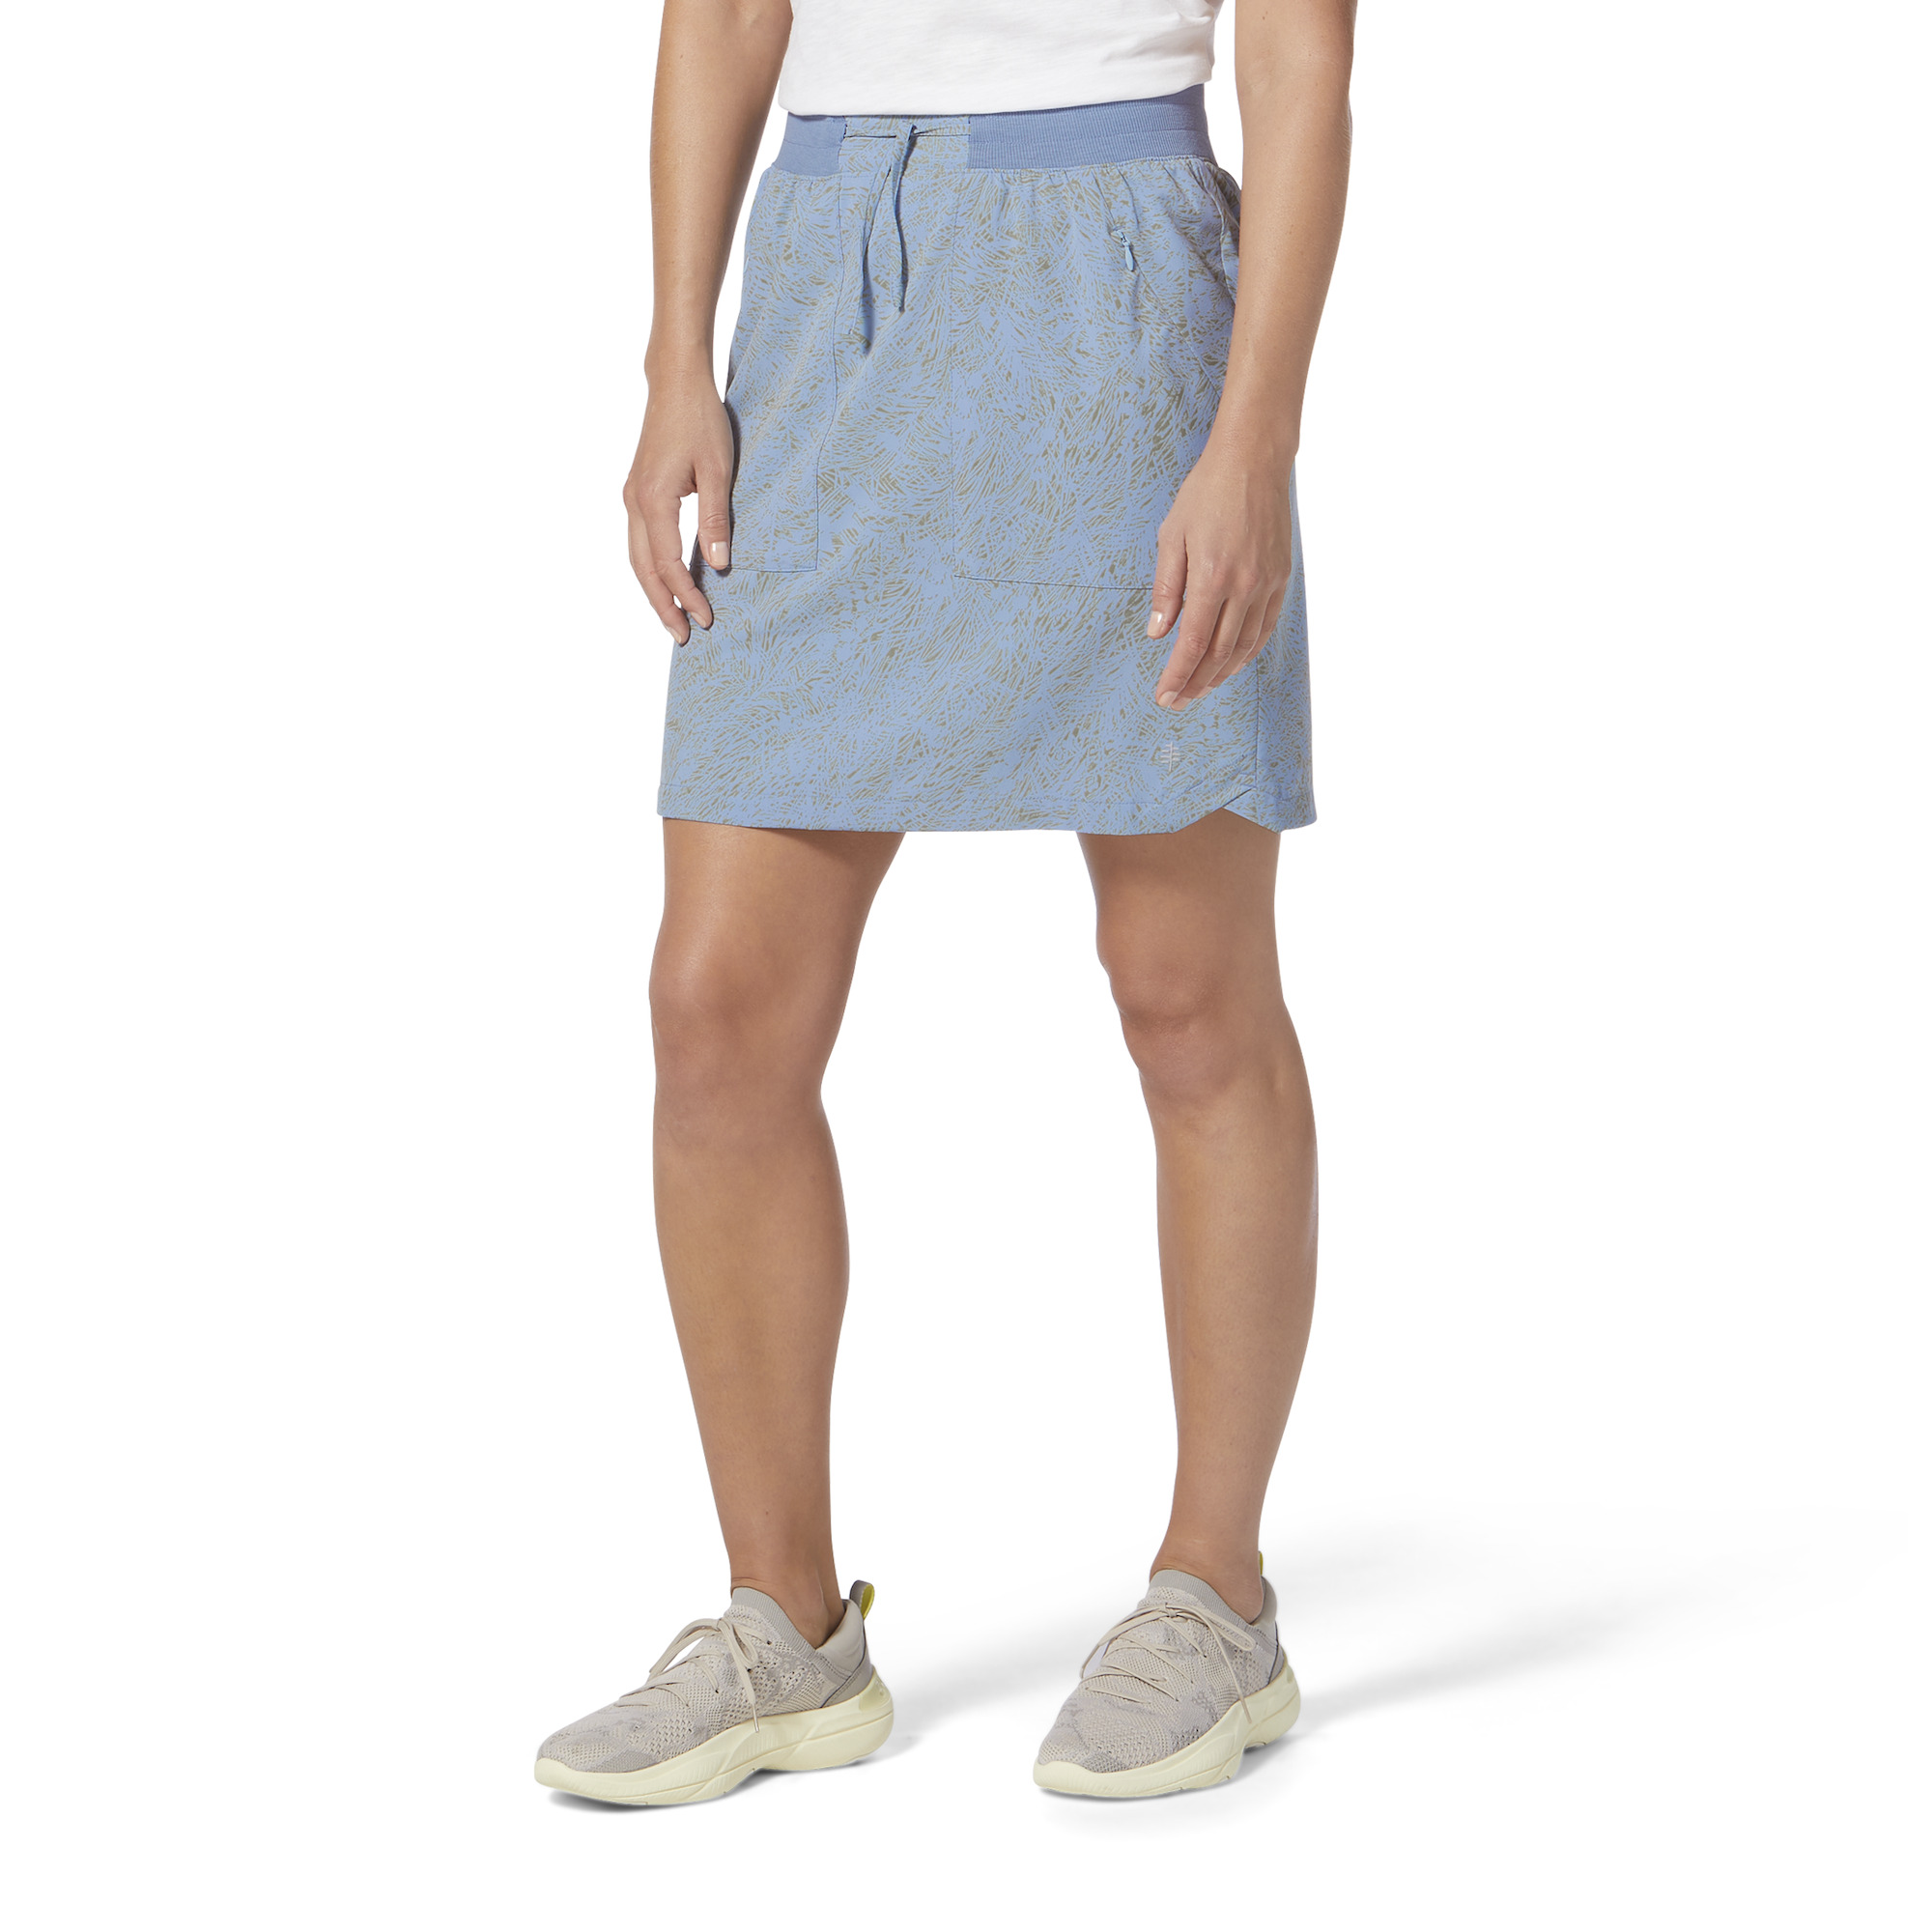 Spotless Evolution Skirt